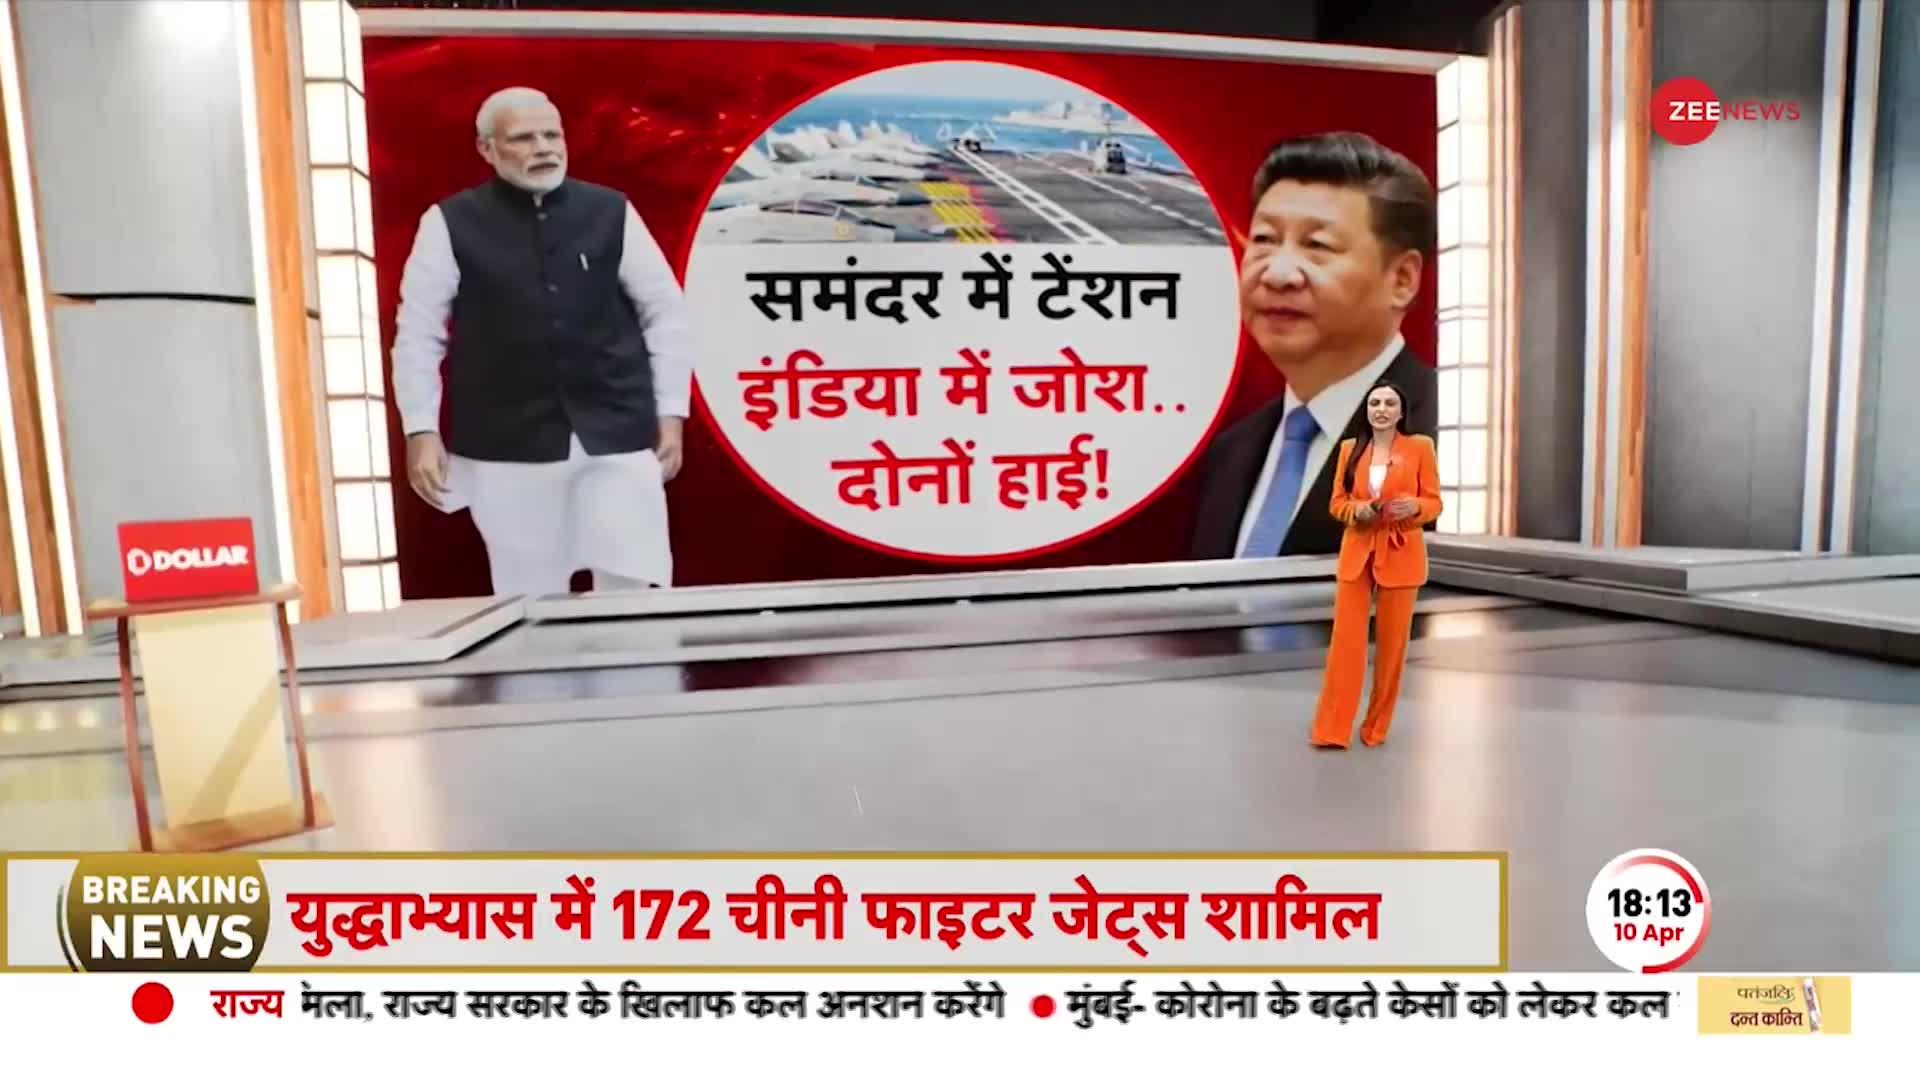 Deshhit: पहले LAC, अब महासागर में घुसपैठ..भारत देगा China को मुंहतोड़ जवाब!